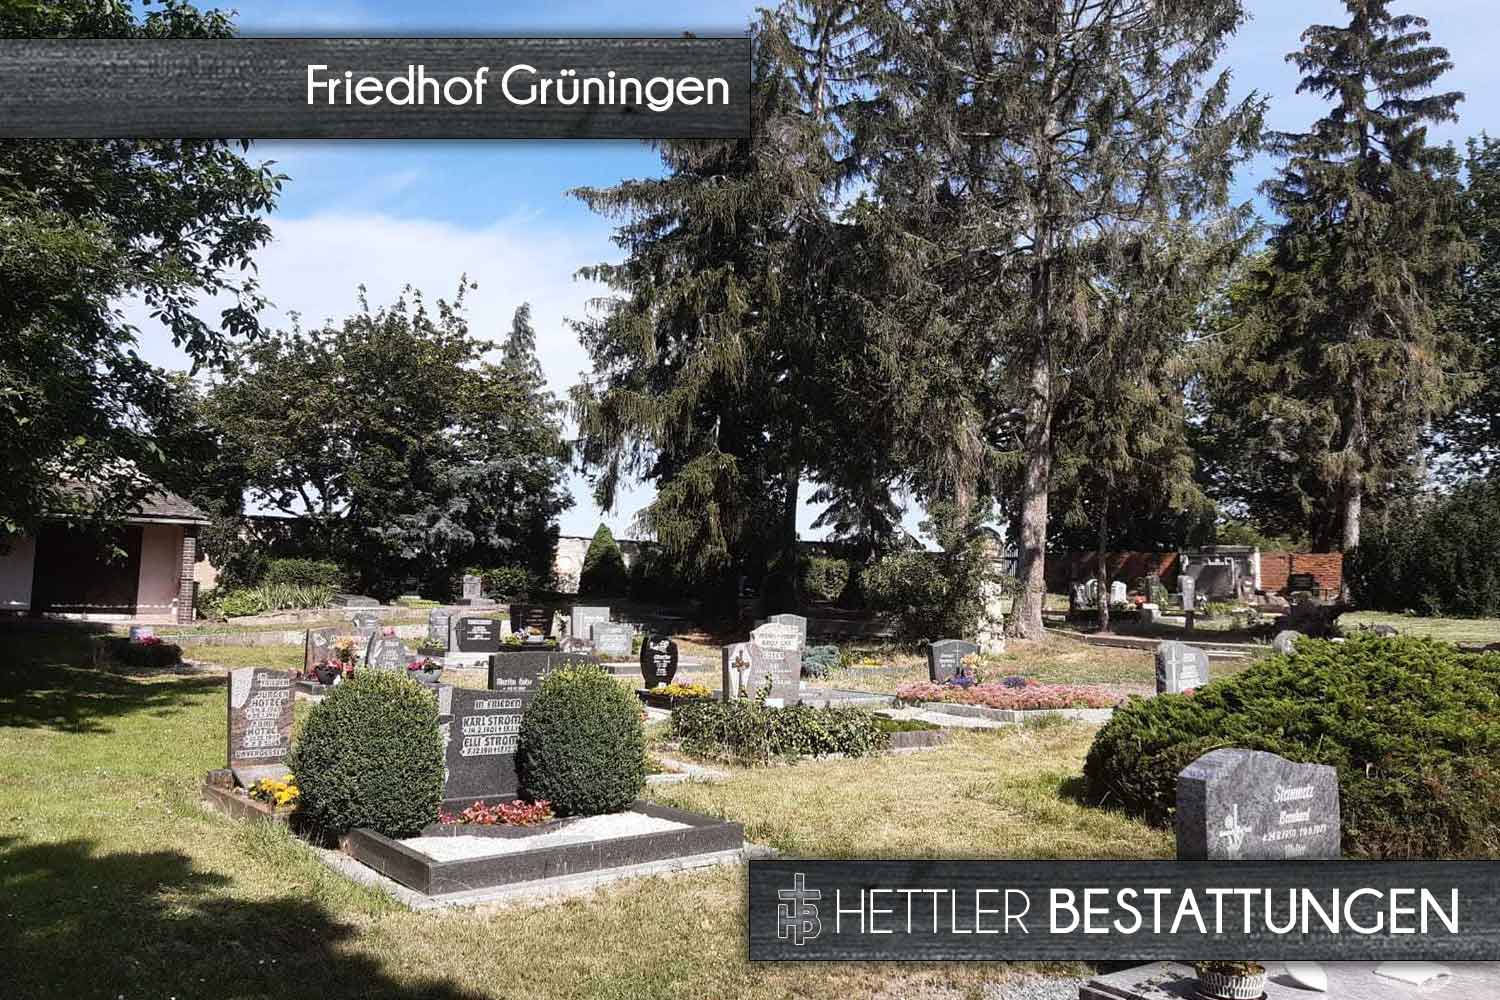 Friedhof in Grüningen. Ihr Ort des Abschieds mit Hettler Bestattungen.